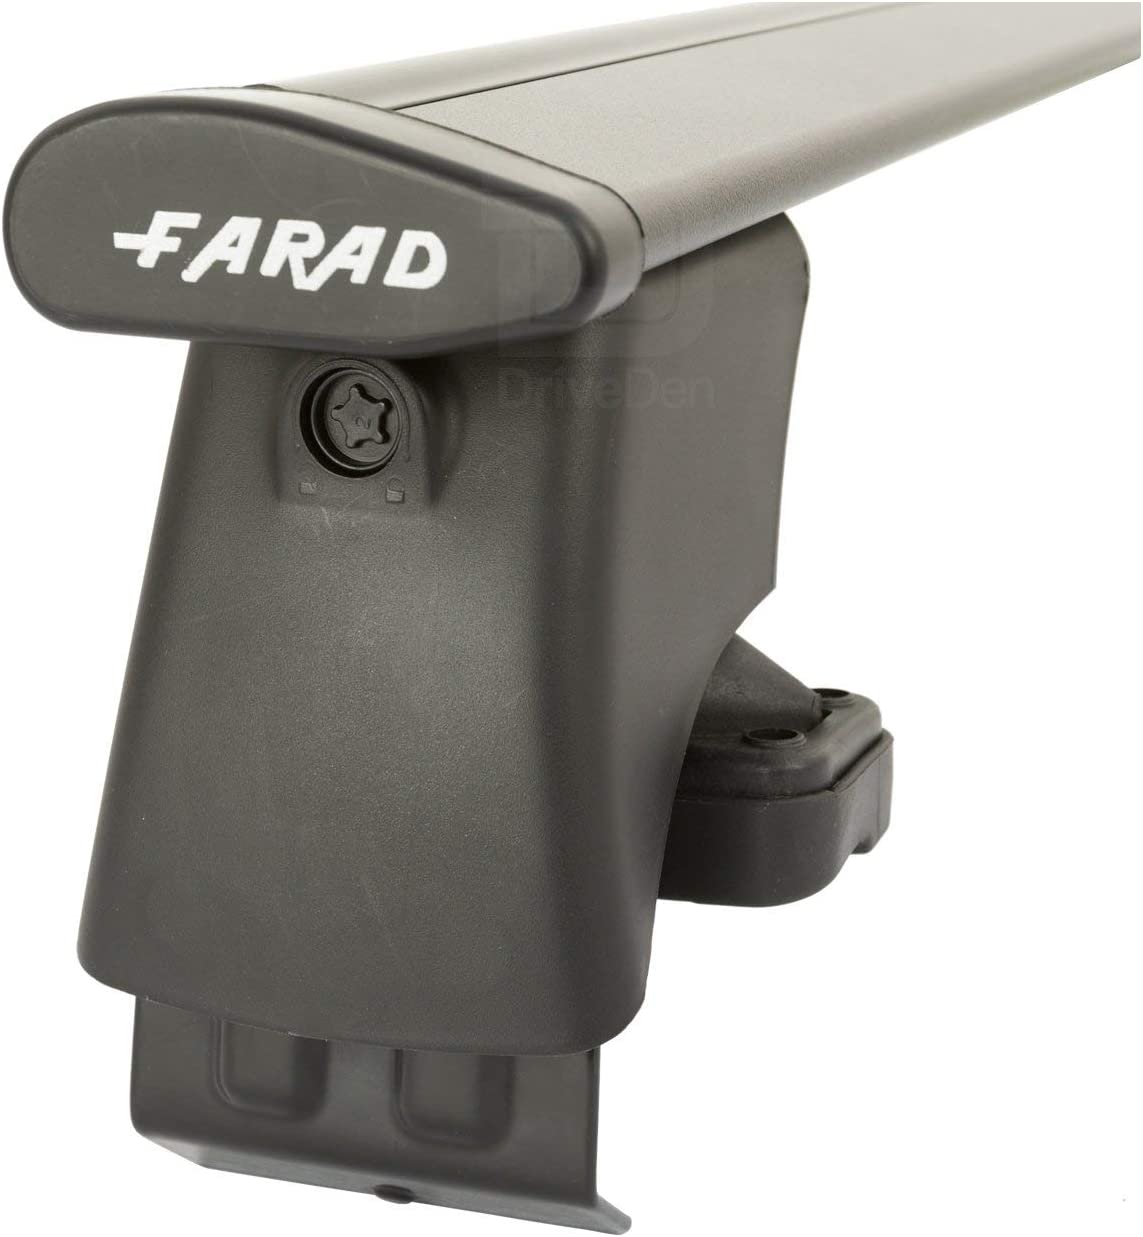 FARAD-Kit H2 per barre portatutto - Mitsubishi Colt 2005-2012 (senza corrimano)